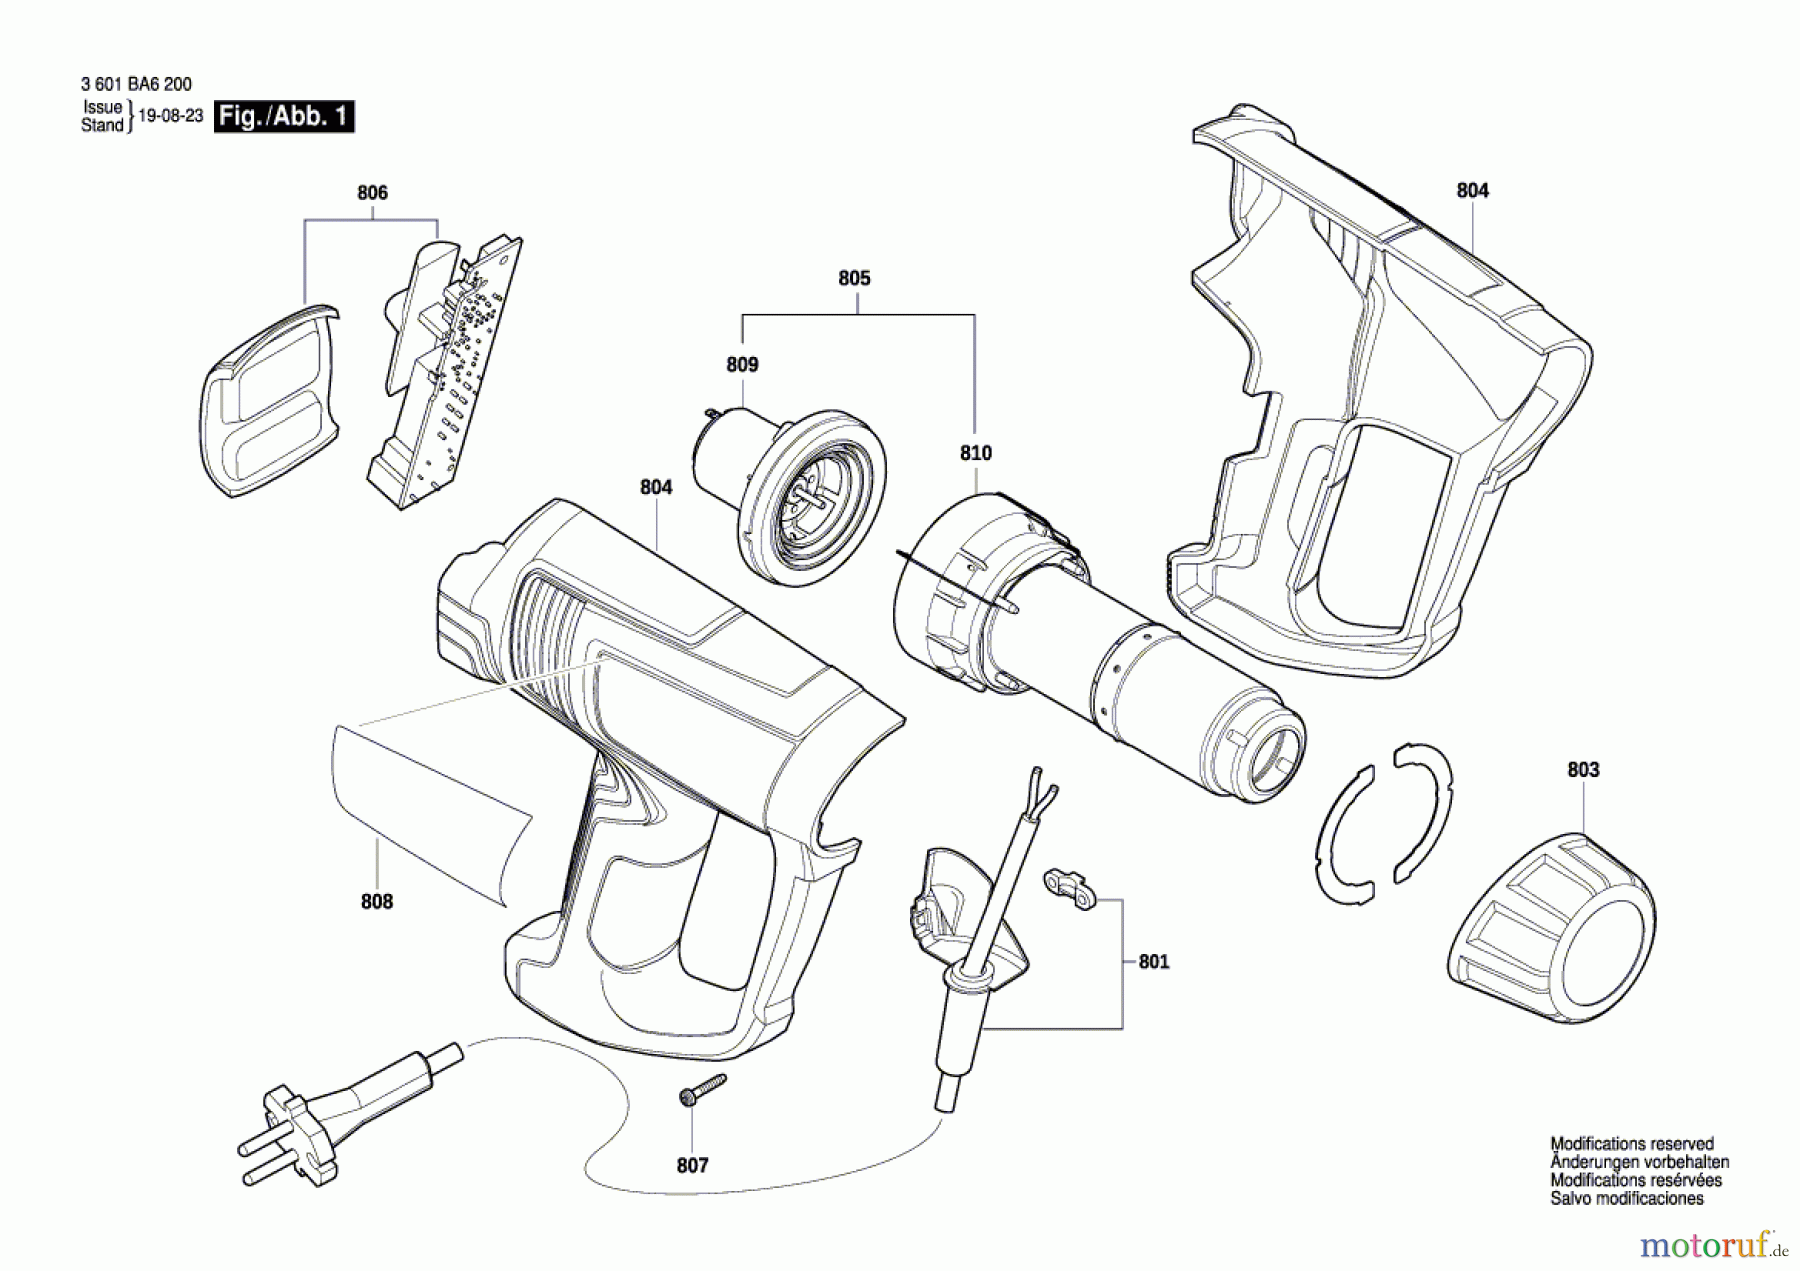  Bosch Werkzeug Heissluftgebläse GHG 20-63 FE Seite 1